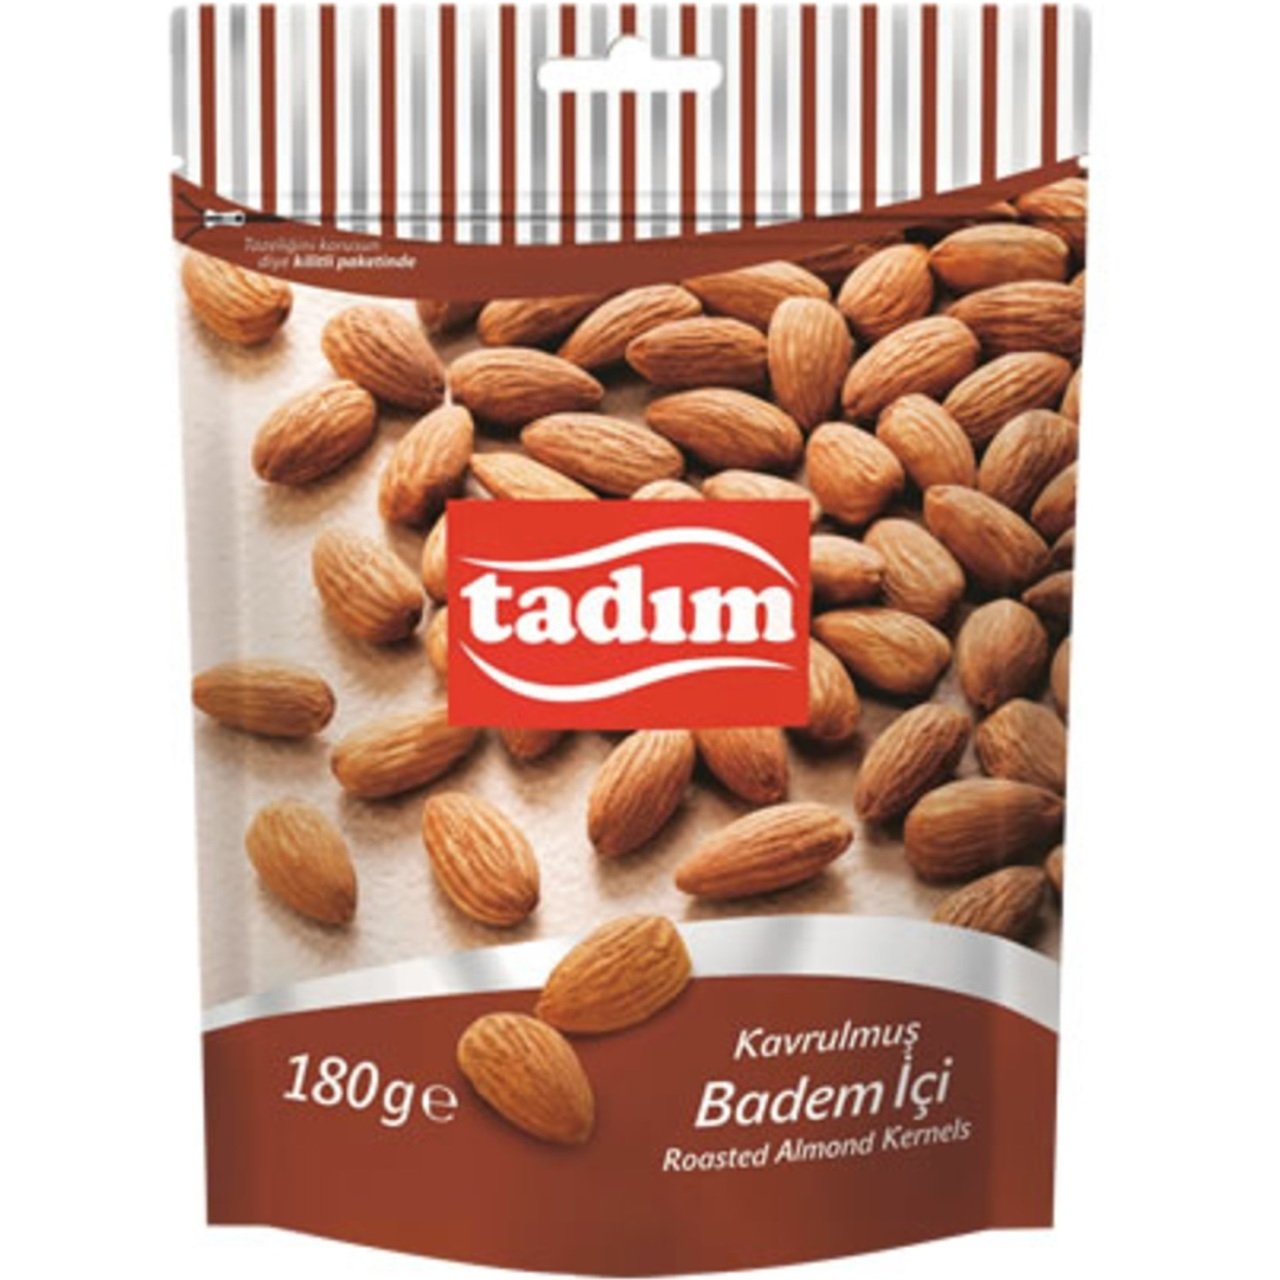 TADIM BADEM 180GR 1*12